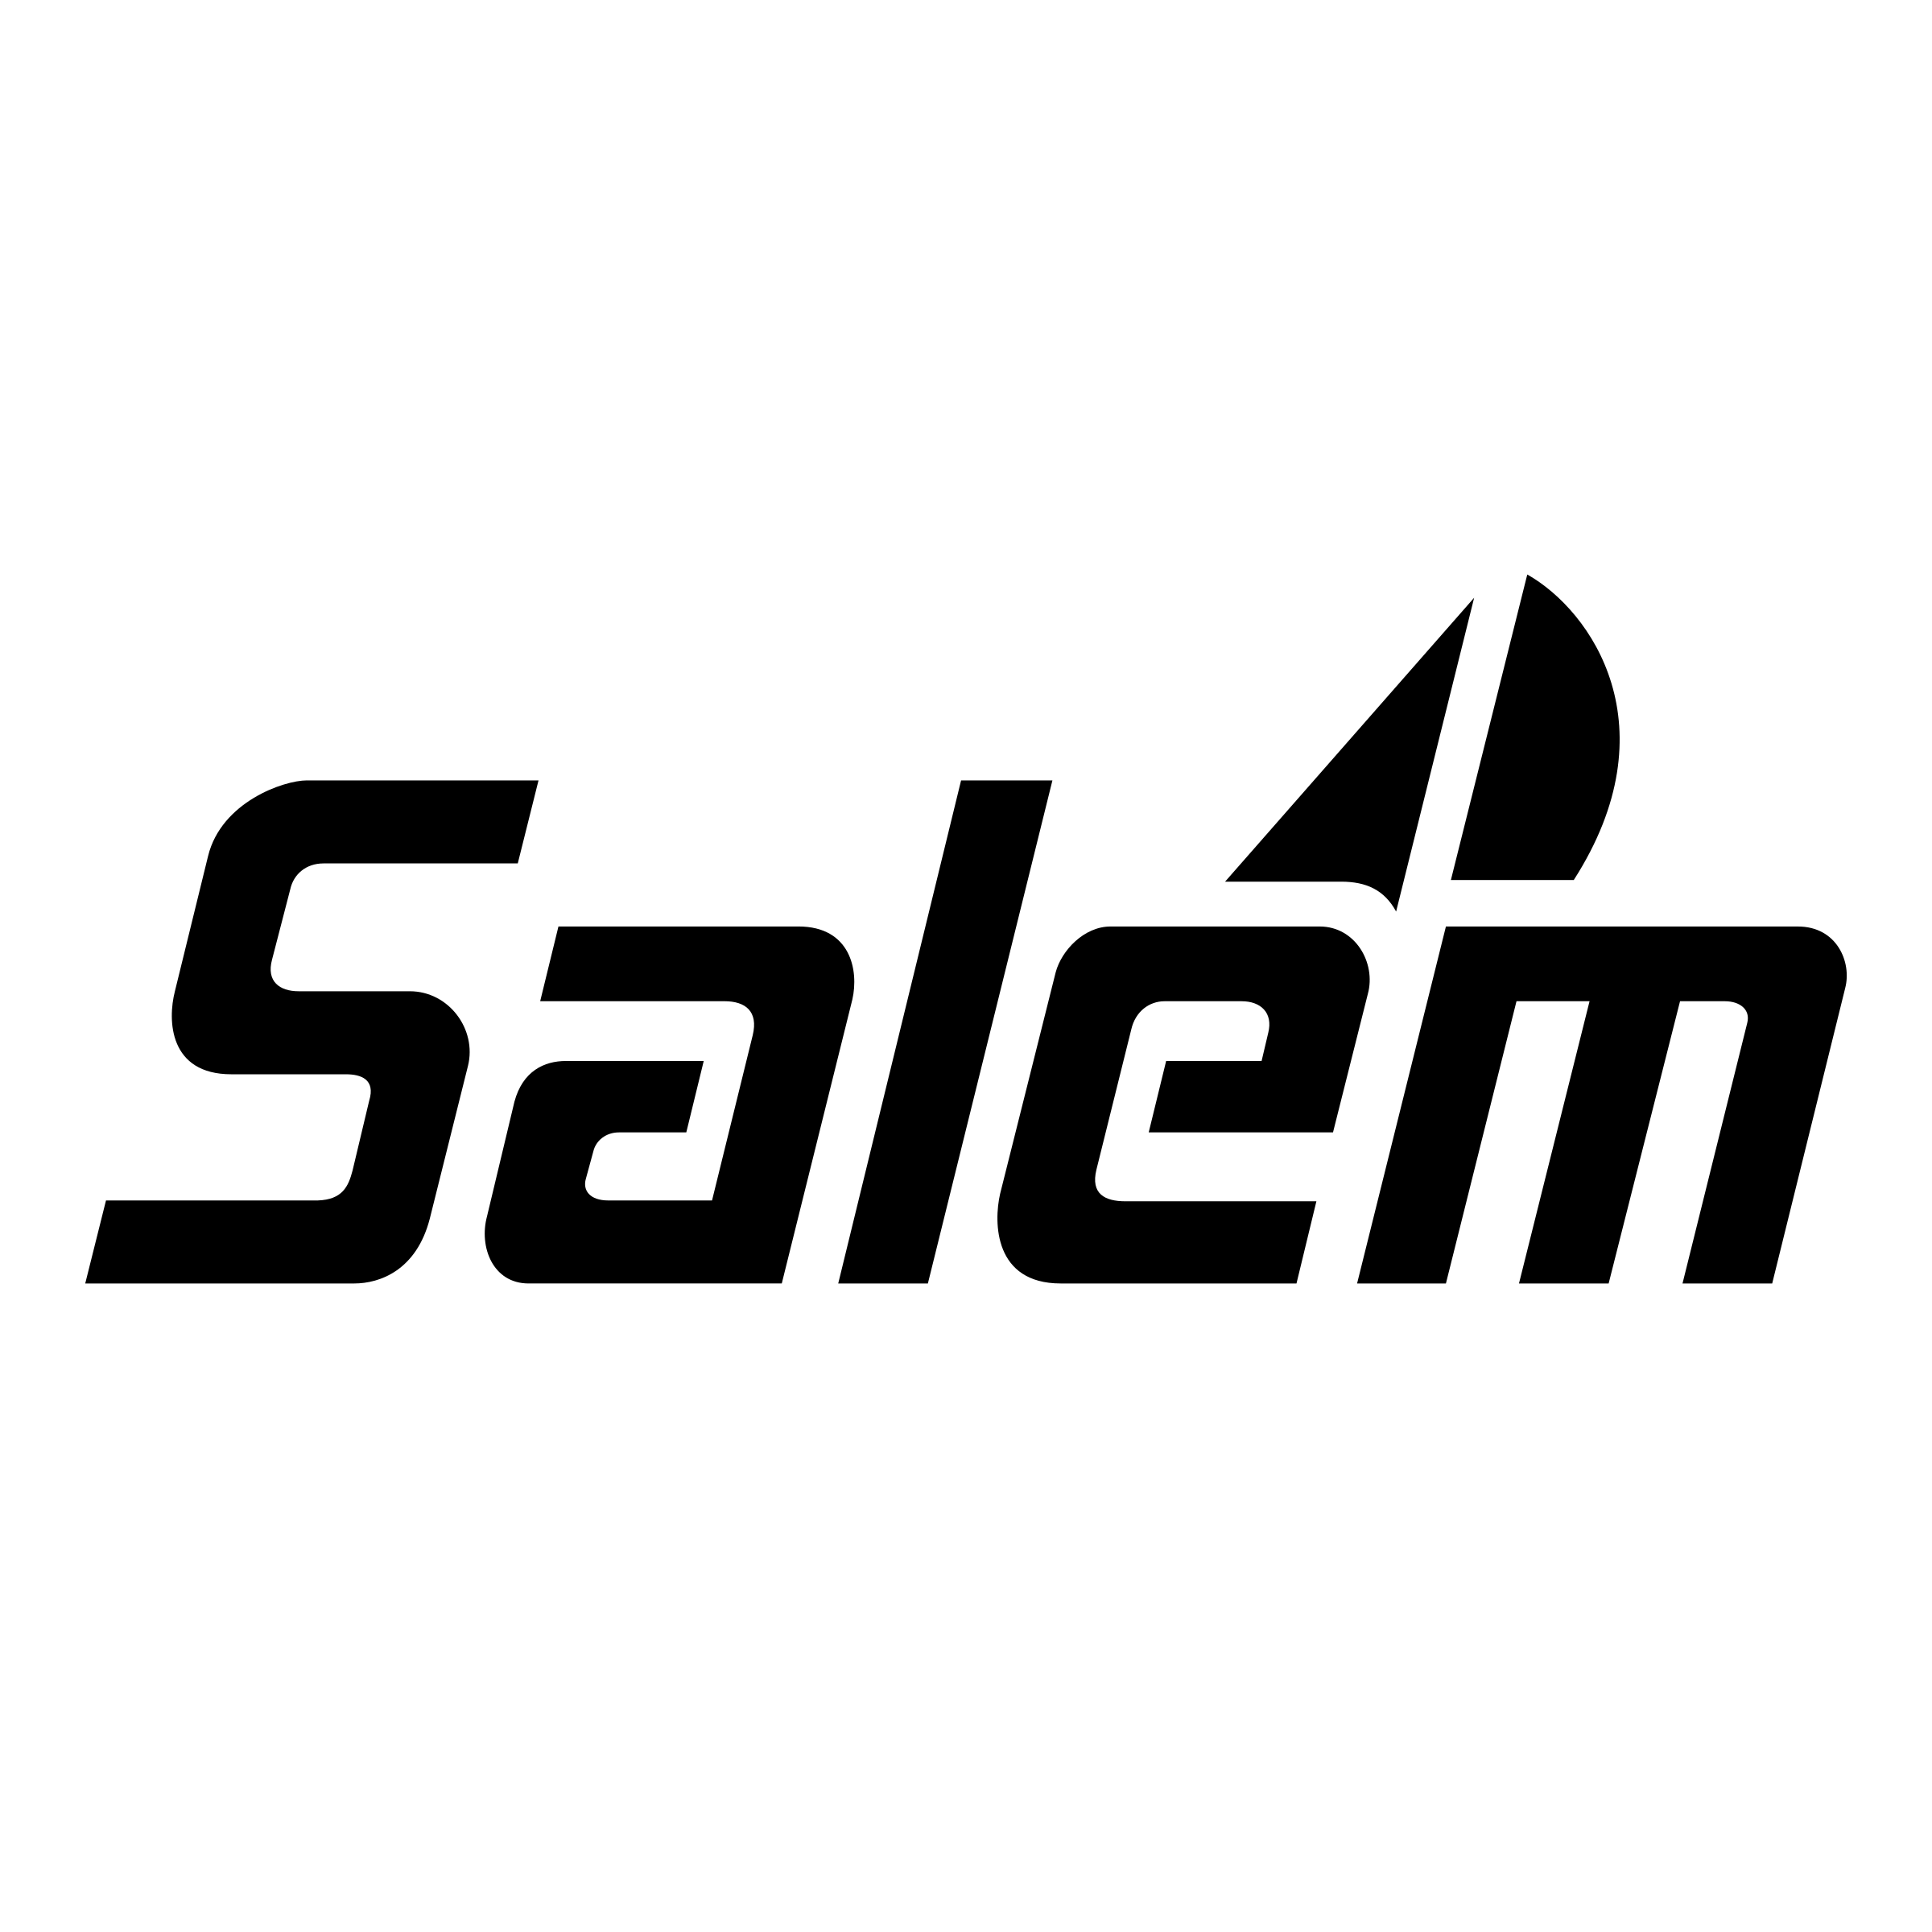 Salem Logo - Salem Logo PNG Transparent & SVG Vector